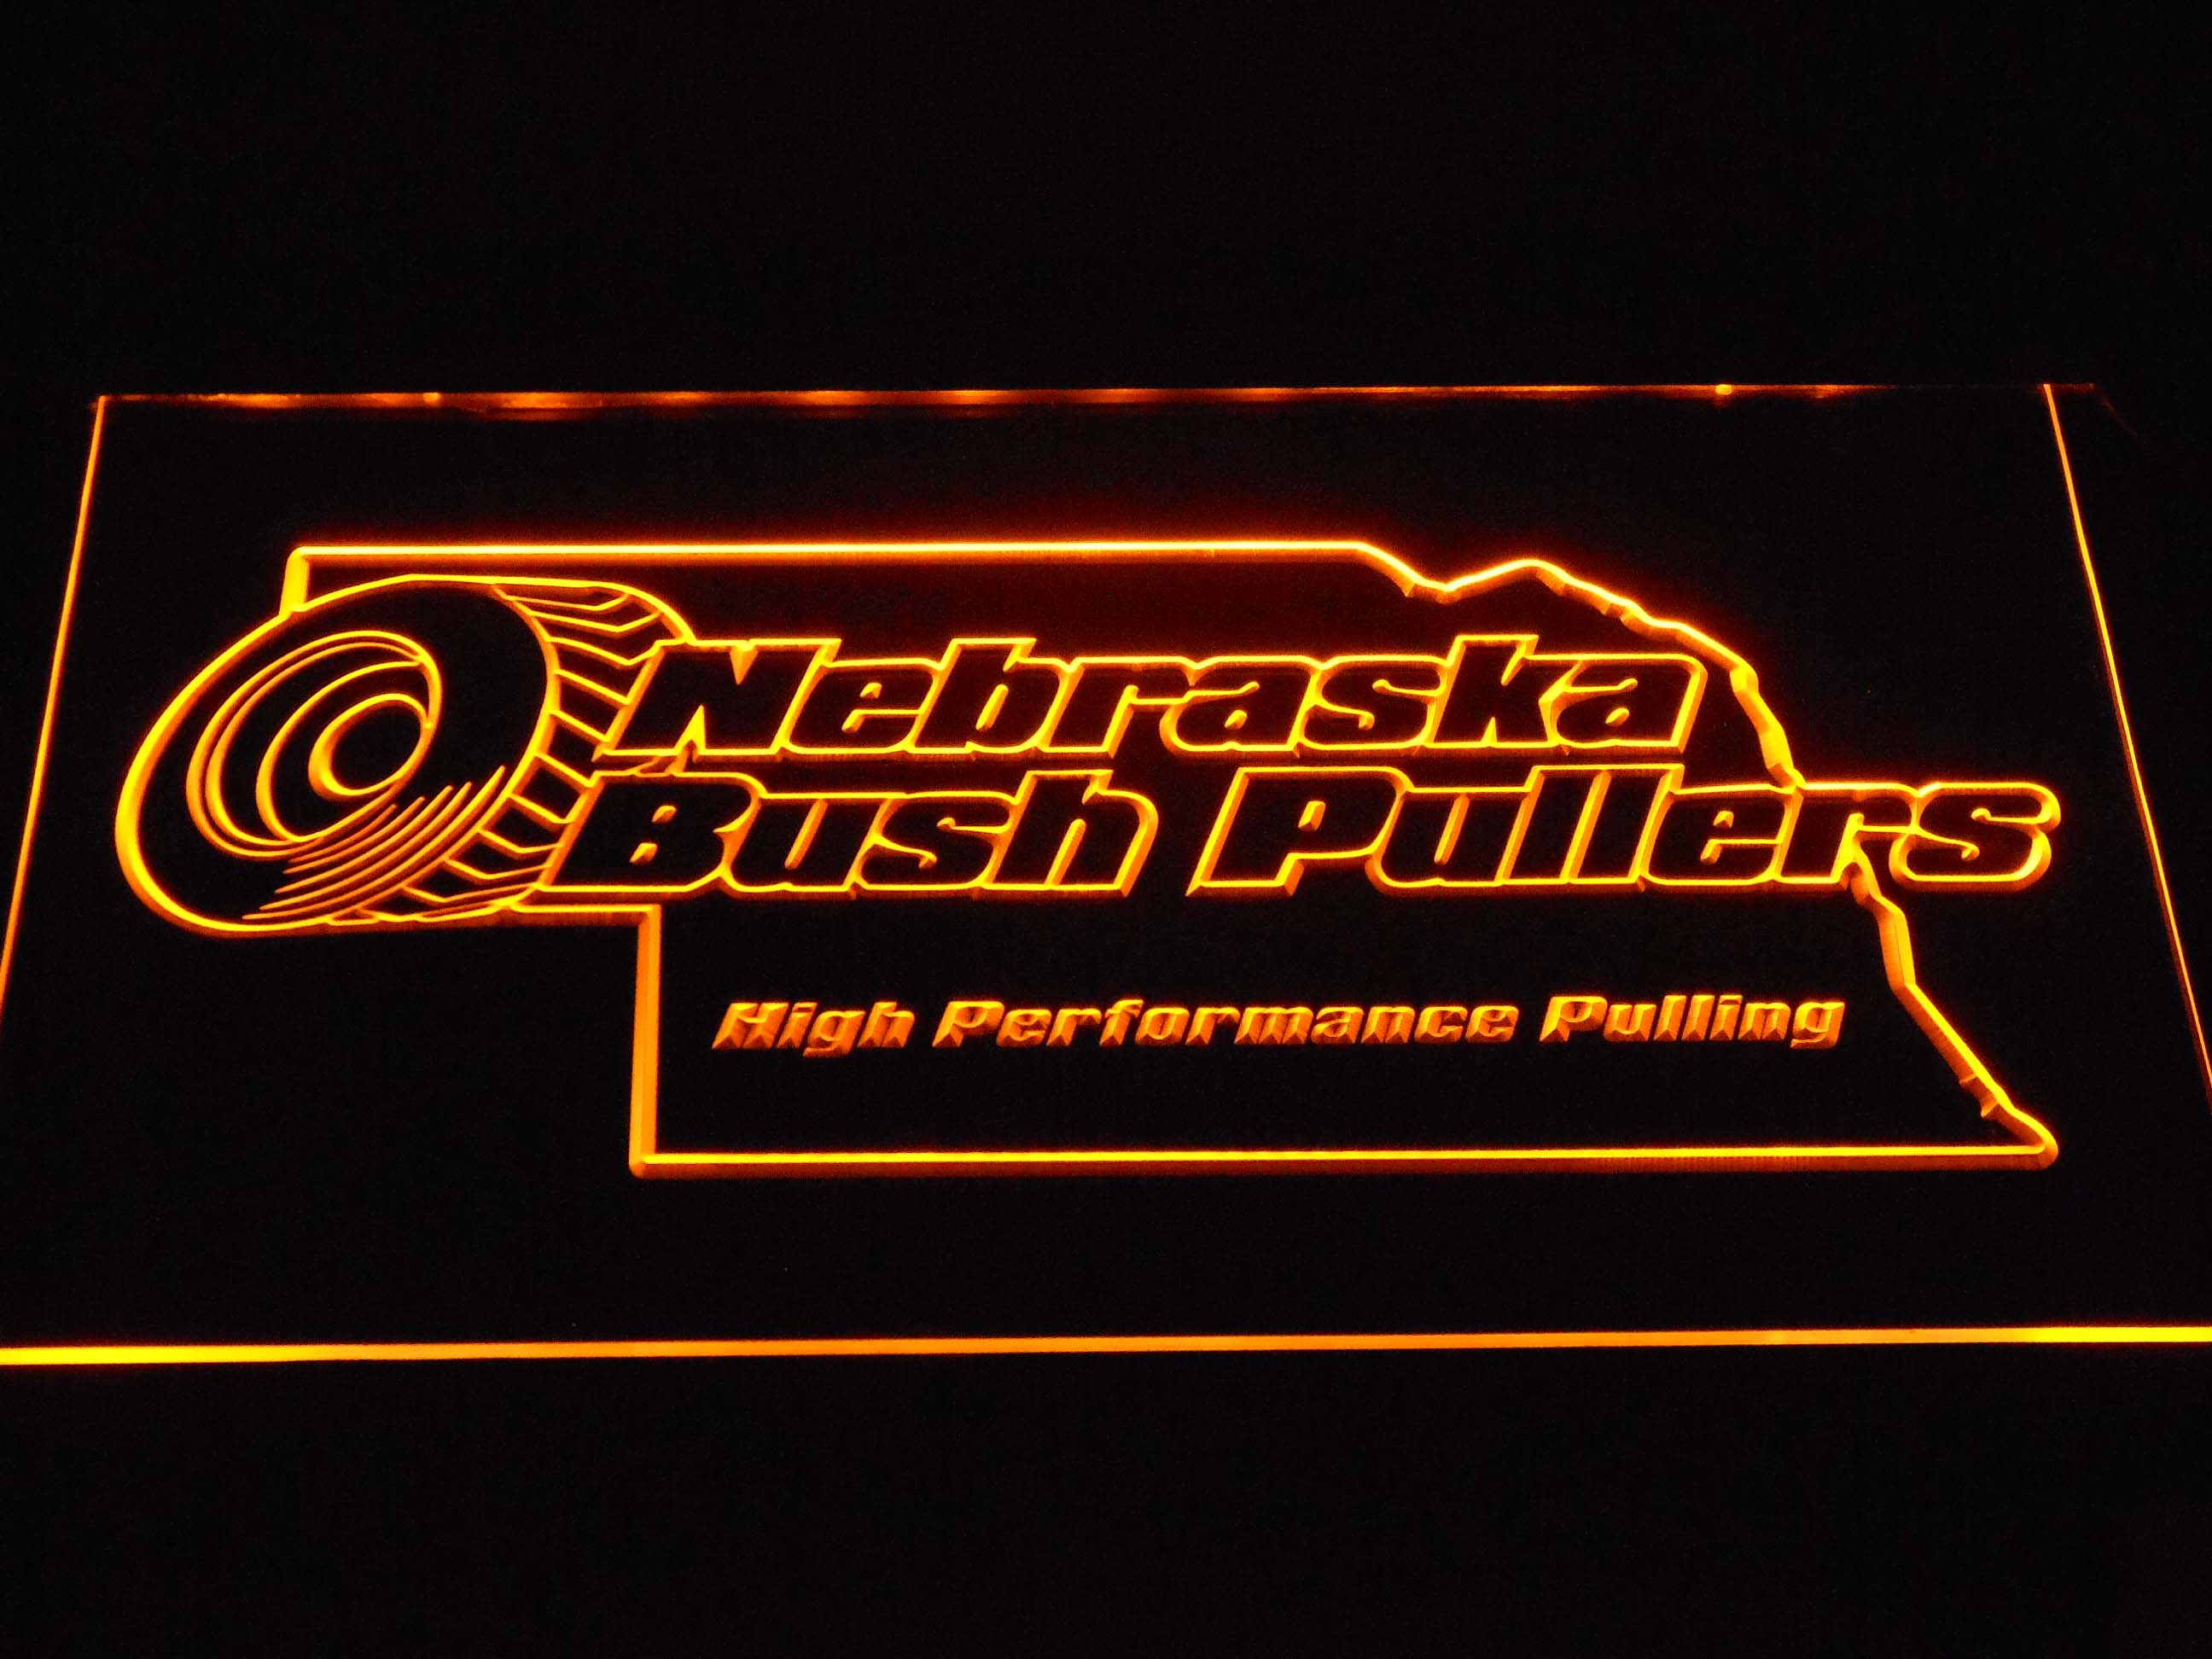 Nebraska Bush Pullers Neon Light LED Sign